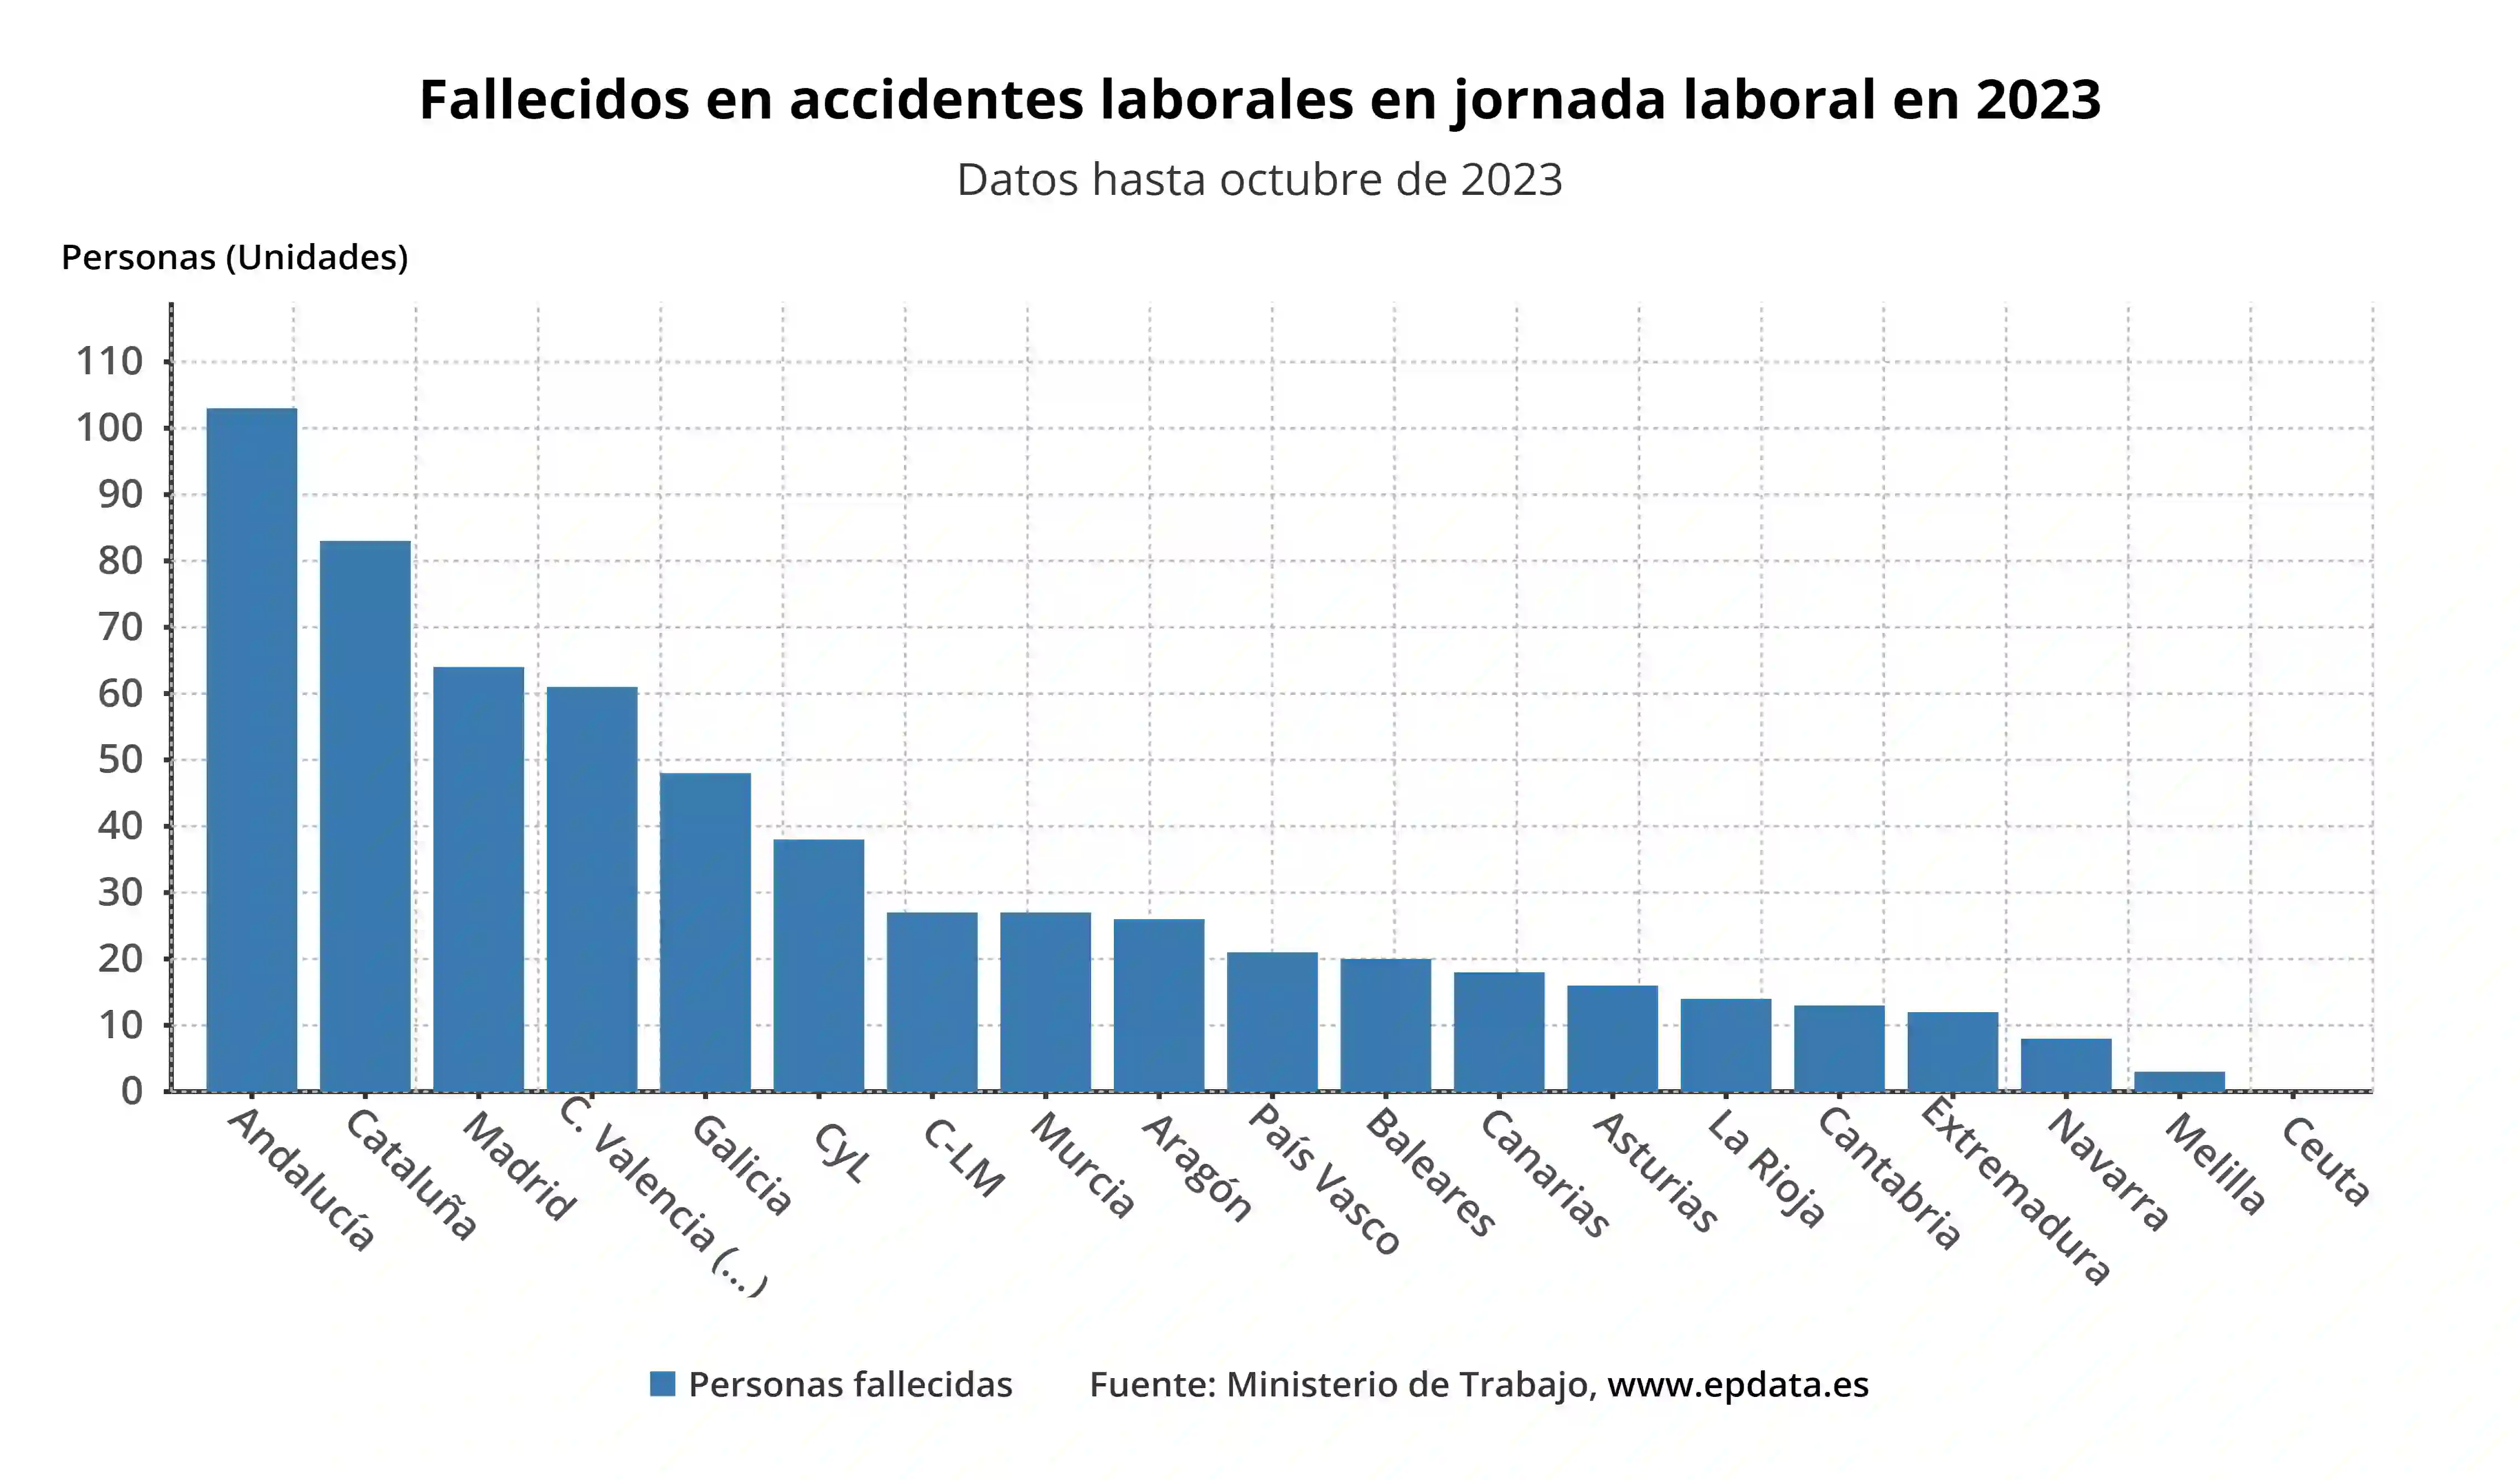 Fallecidos en accidentes laborales en jornada laboral en 2023 por Comunidades / Gráfico: EP